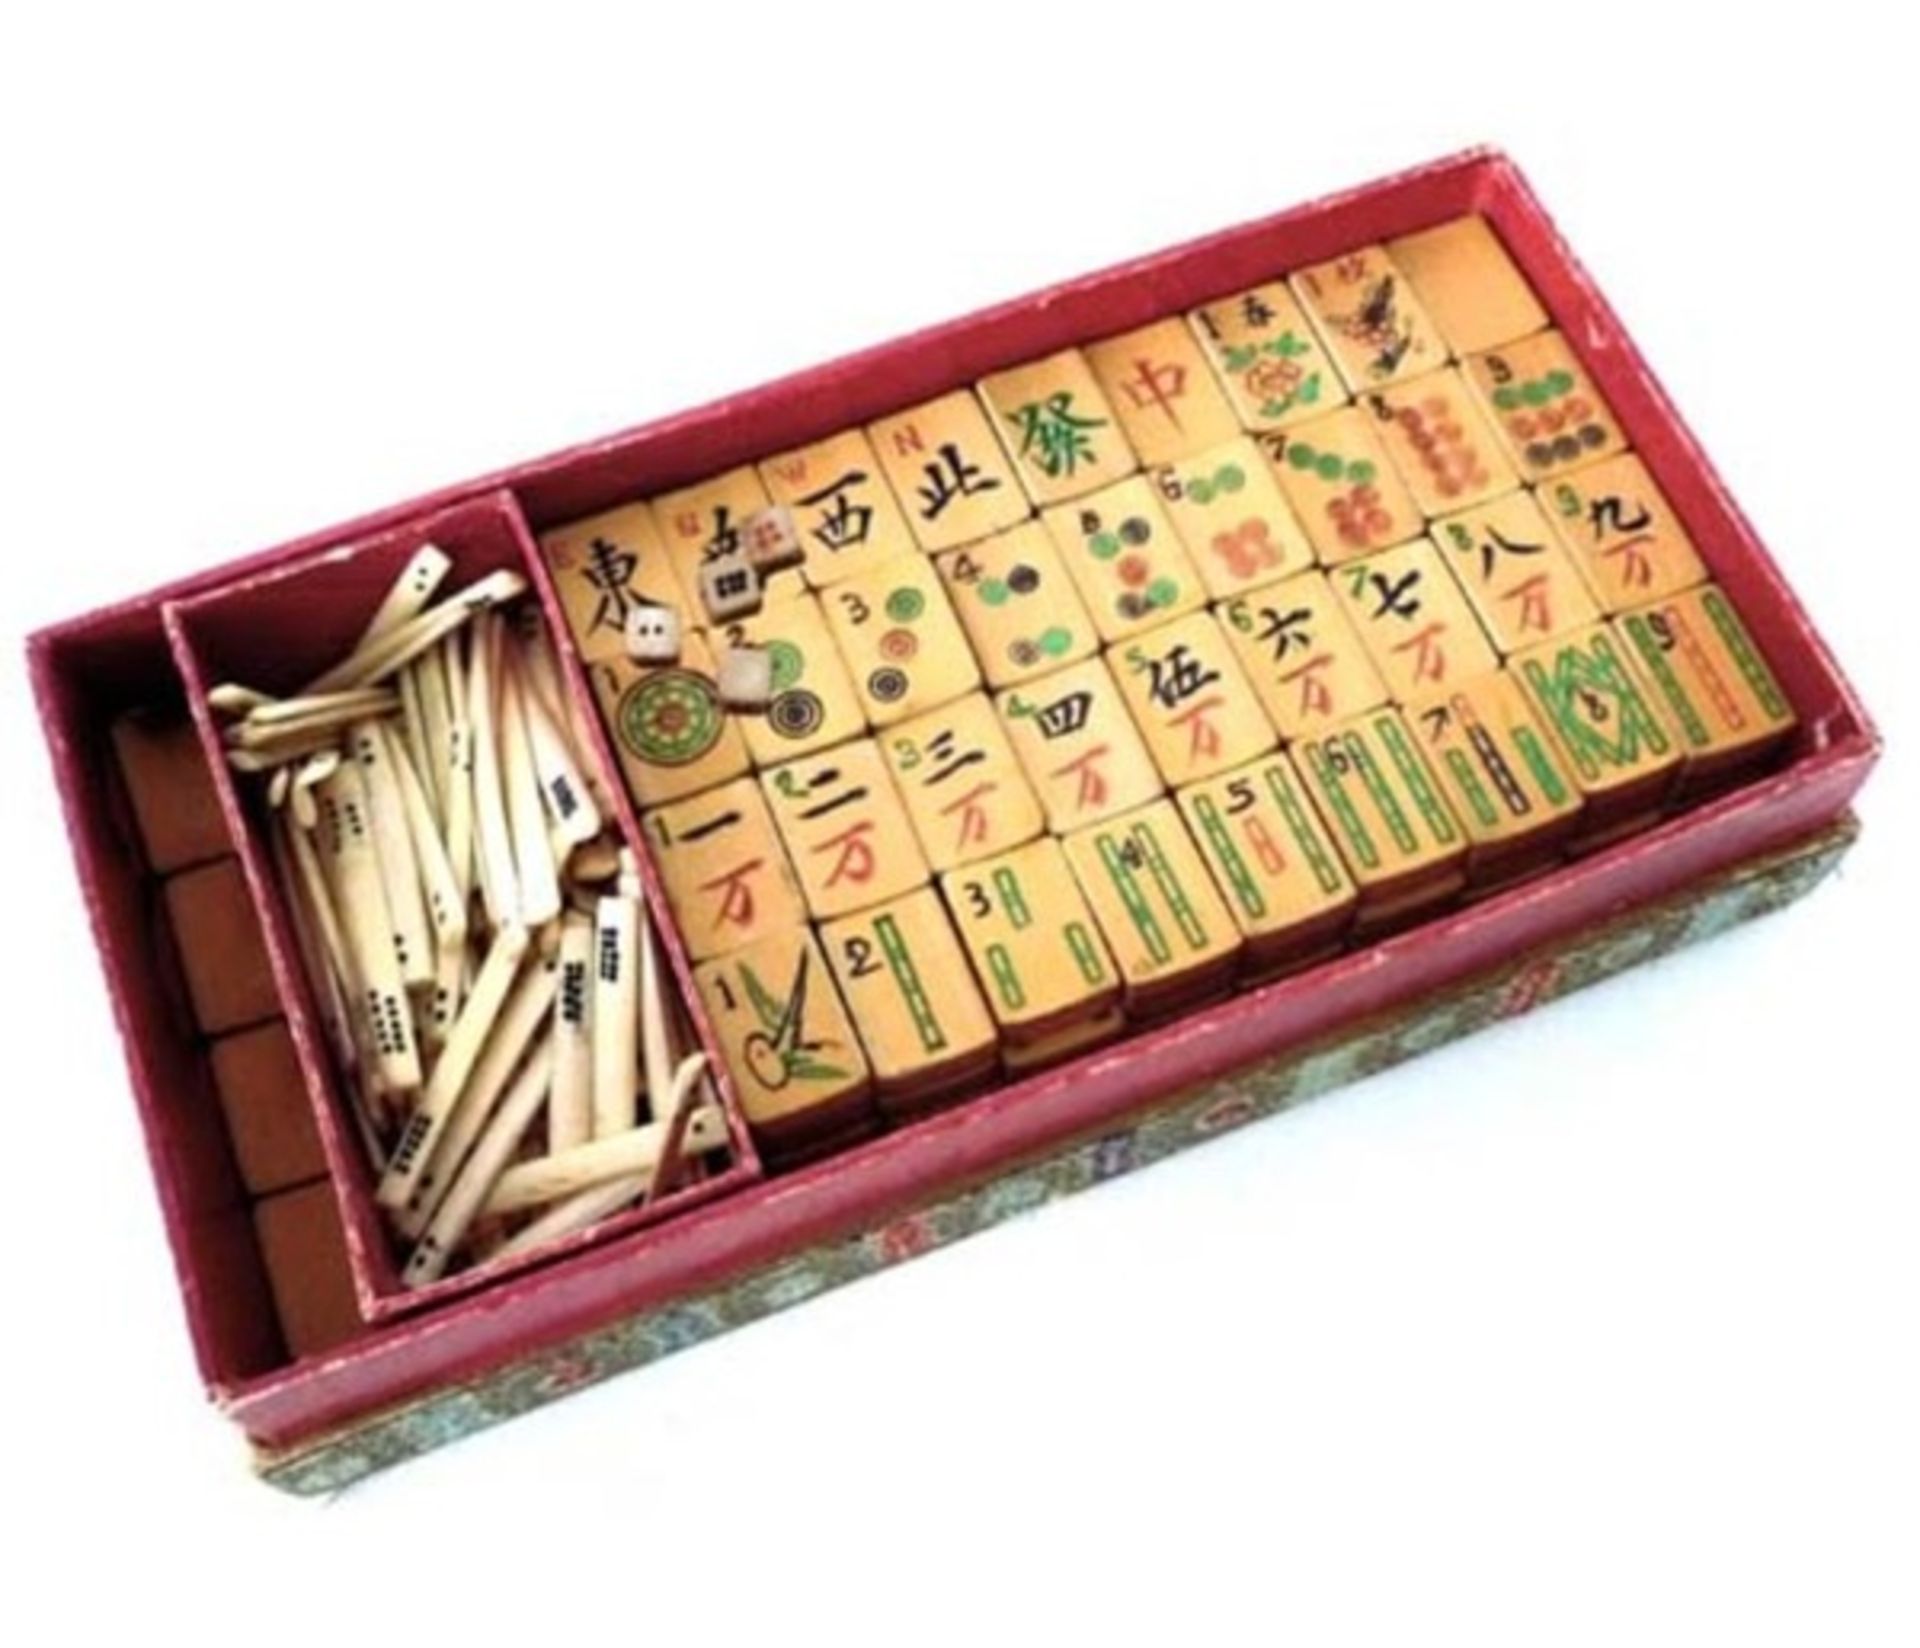 (Mahjong) Mahjong bamboe, langwerpig veelkleurige doos, ca. 1924 - Bild 2 aus 9